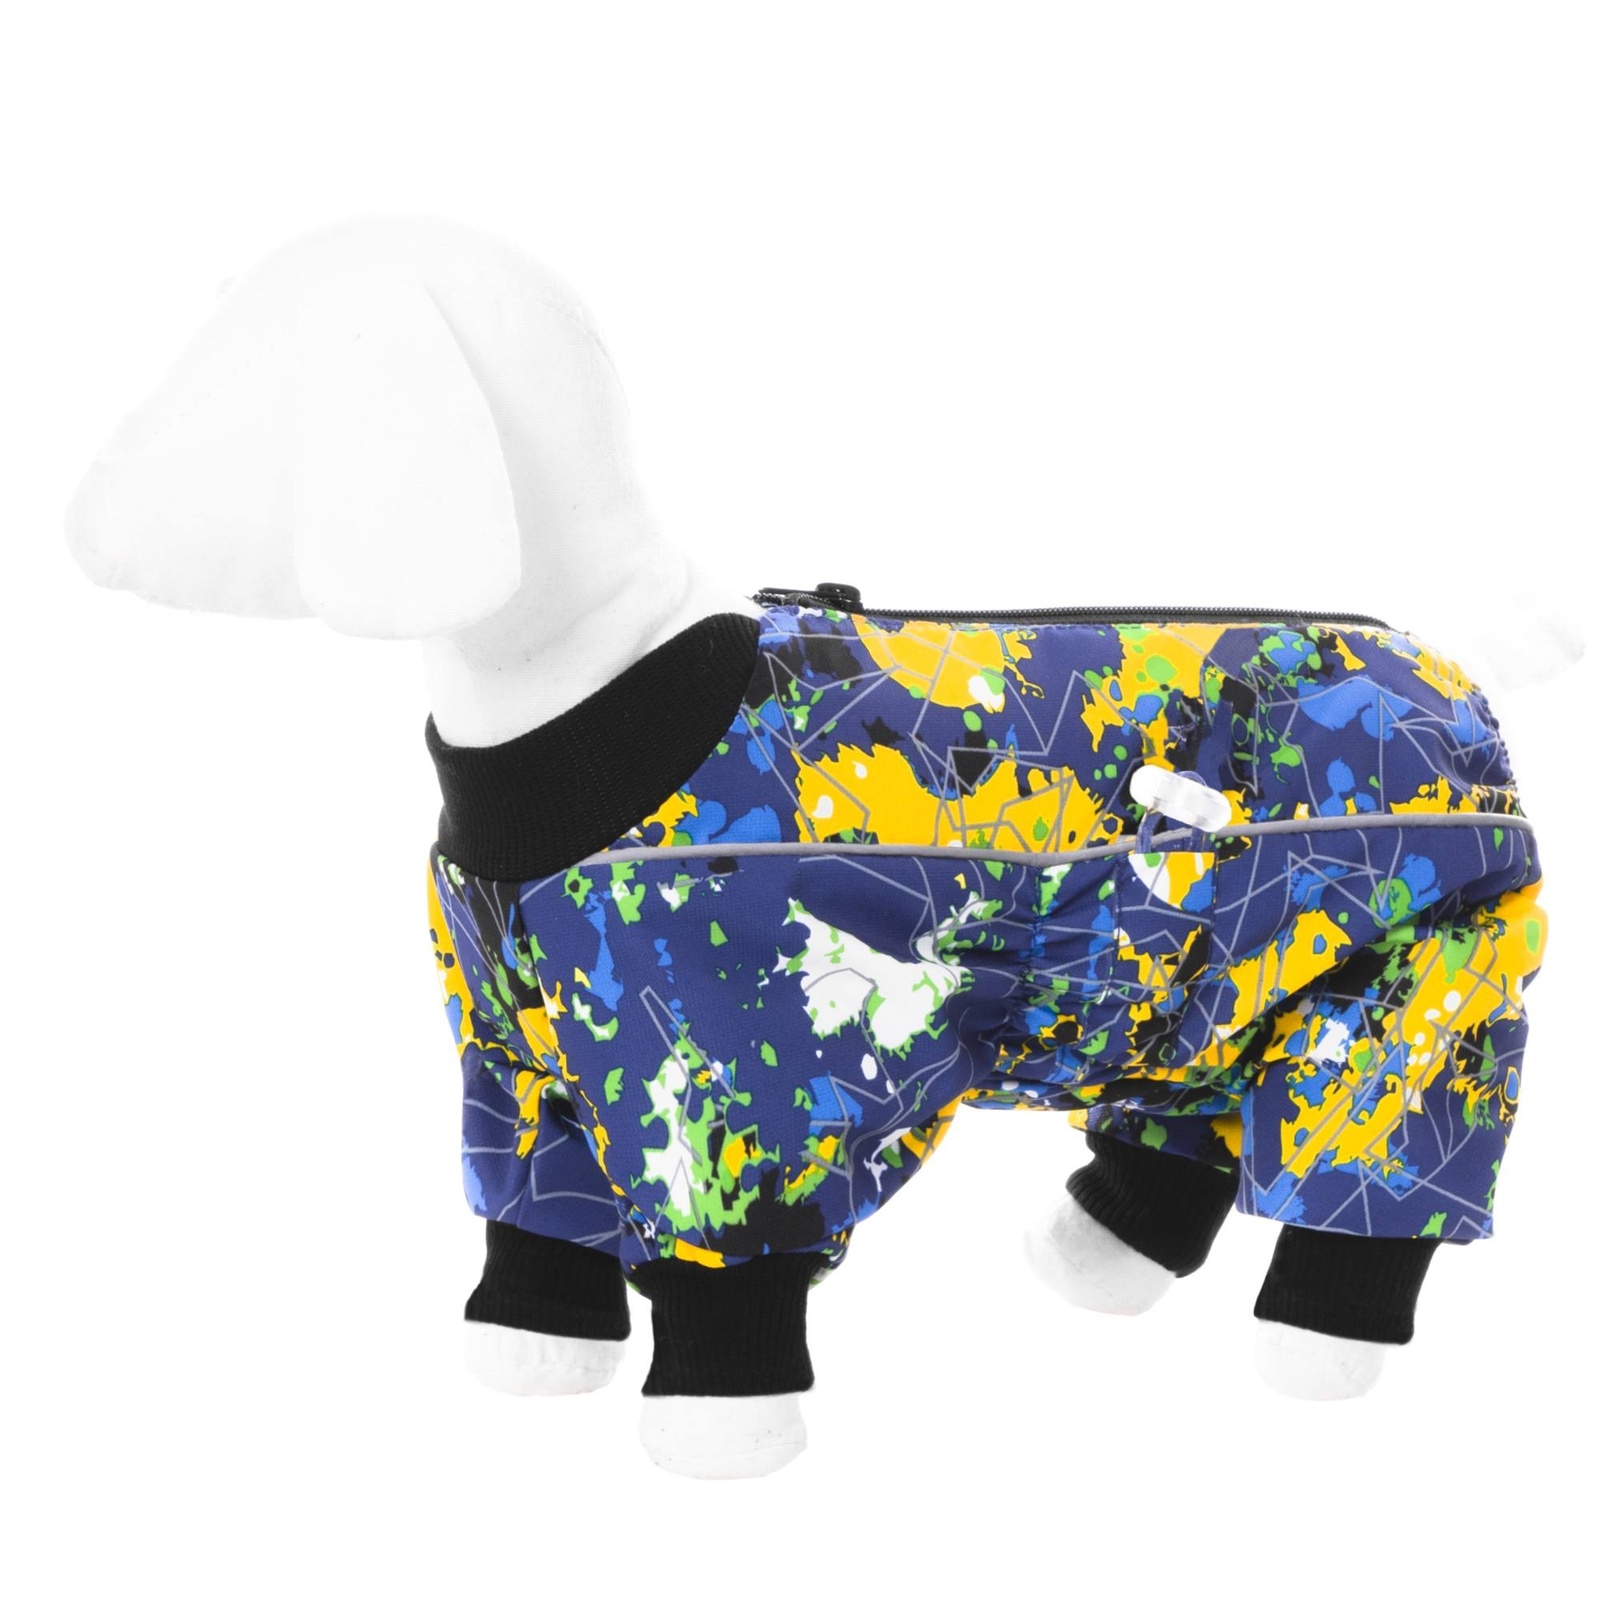 Yami-Yami одежда Yami-Yami одежда комбинезон для собак малых пород, на флисе с рисунком краски (XL) yami yami одежда yami yami одежда комбинезон для собак малых пород фиолетовый на флисе хl 4